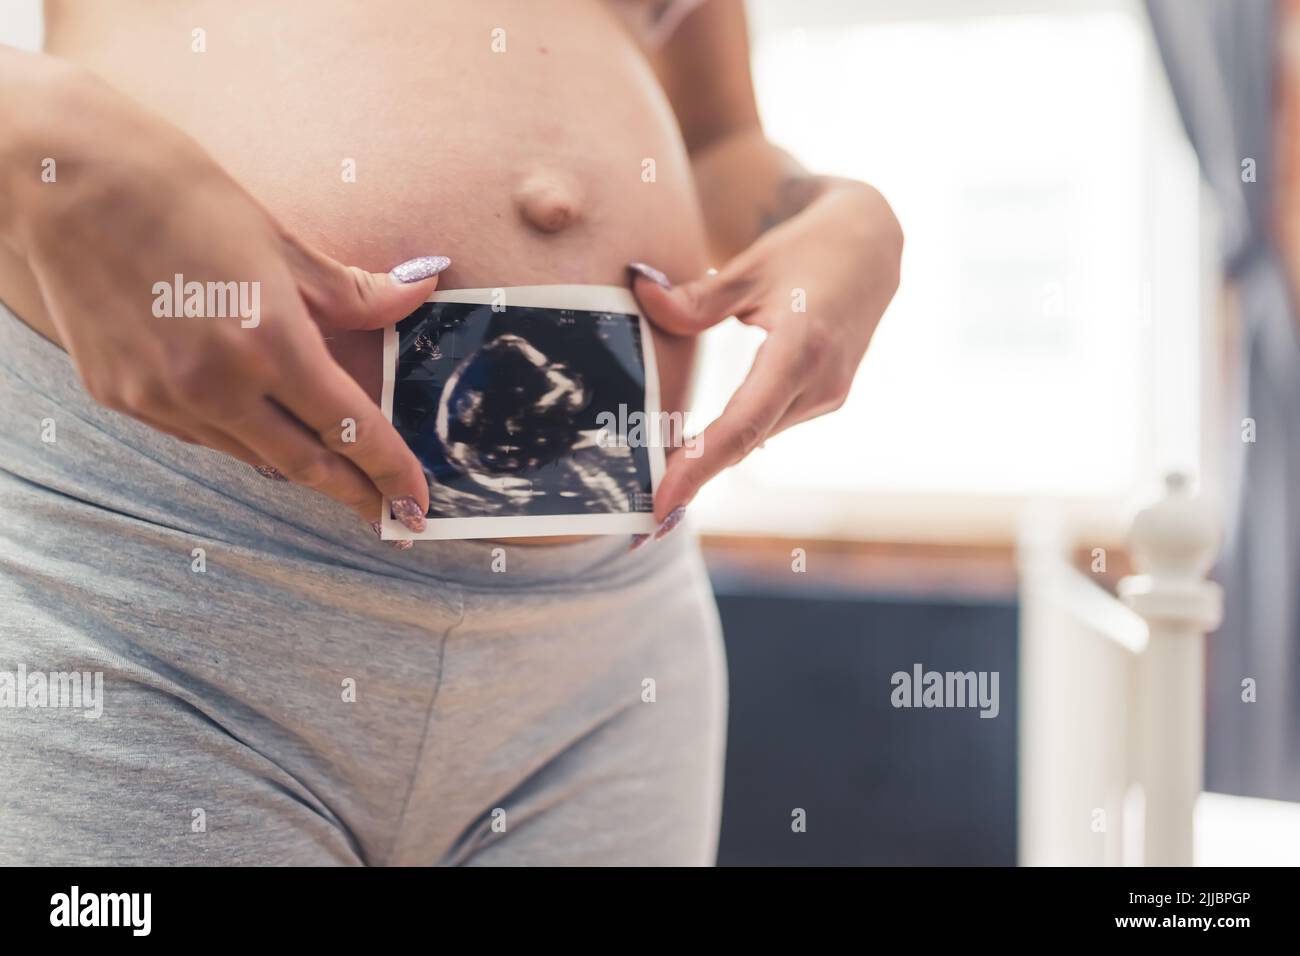 Ventre incinta di una persona caucasica in pantaloncini da motociclista grigi e una scansione della testa del suo nascituro. Concetto di genitorialità futura. Foto di alta qualità Foto Stock